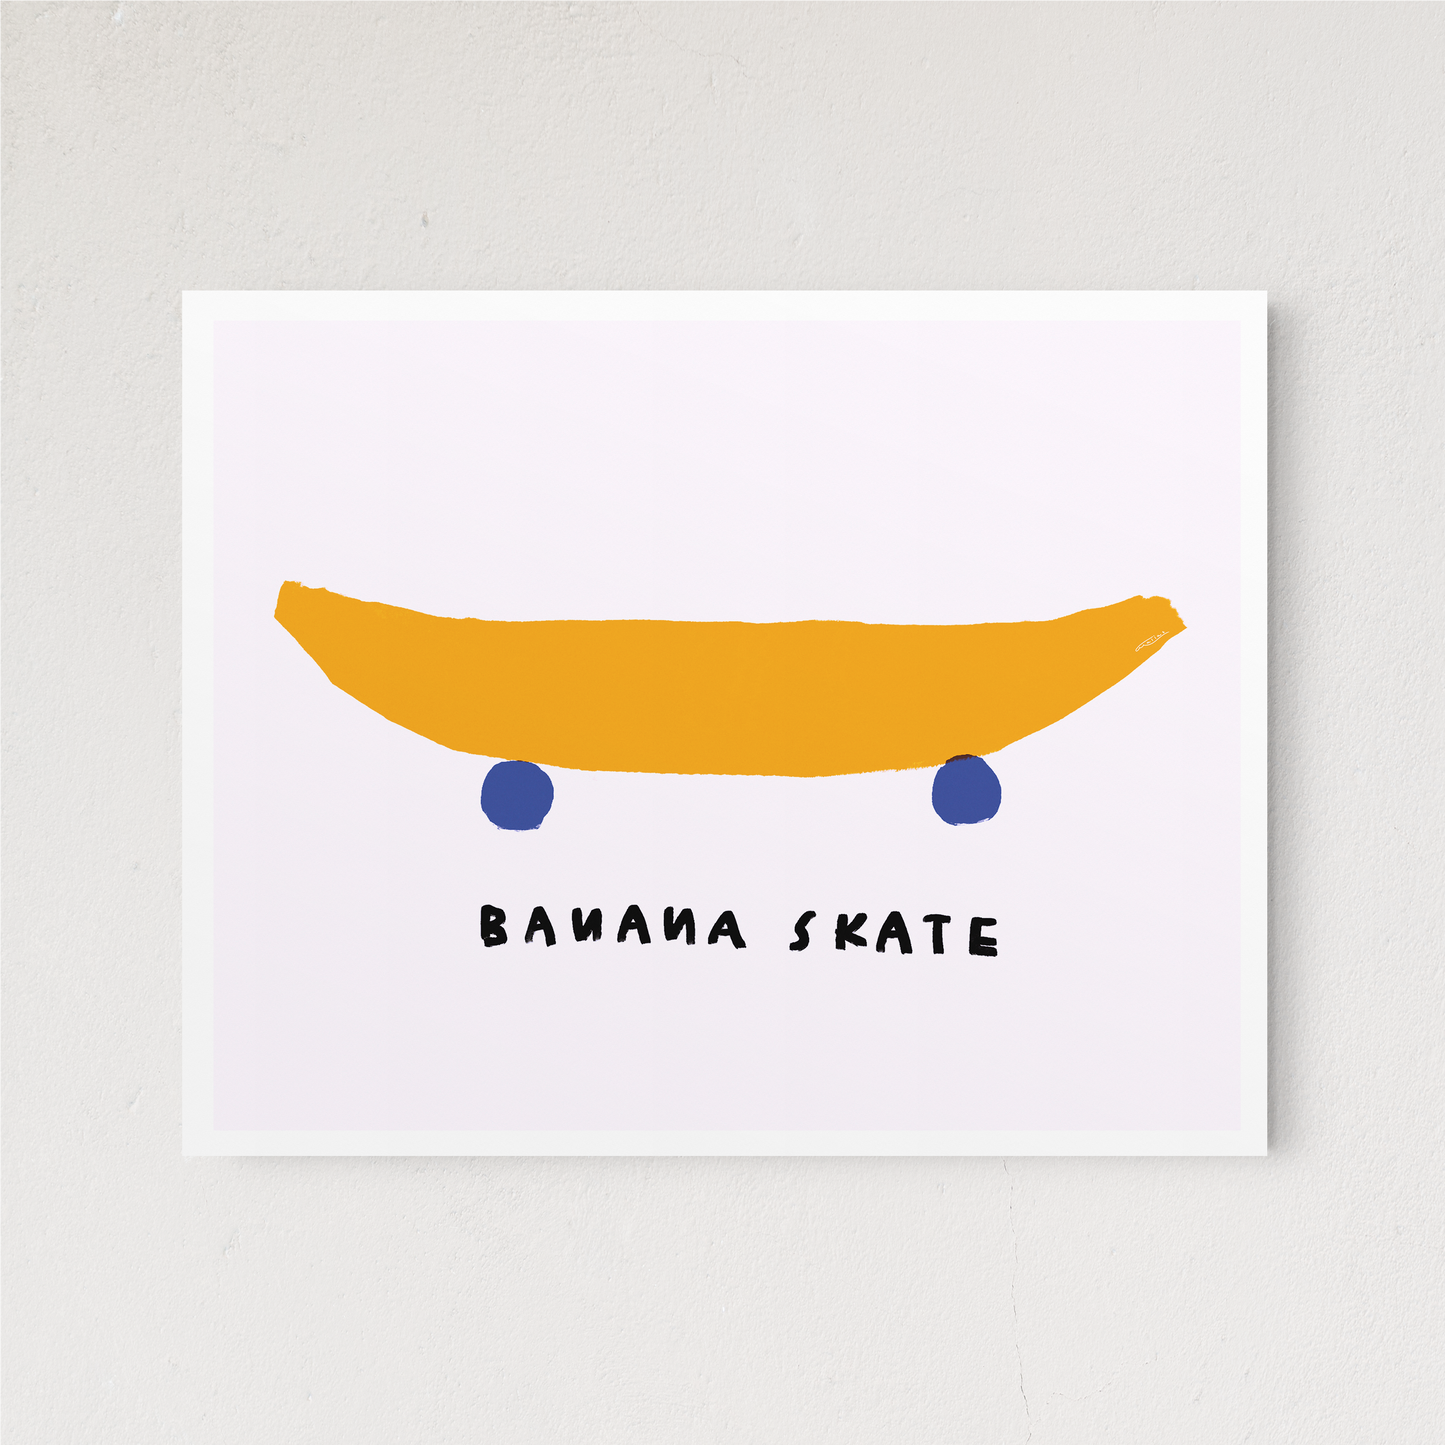 Banana Skate